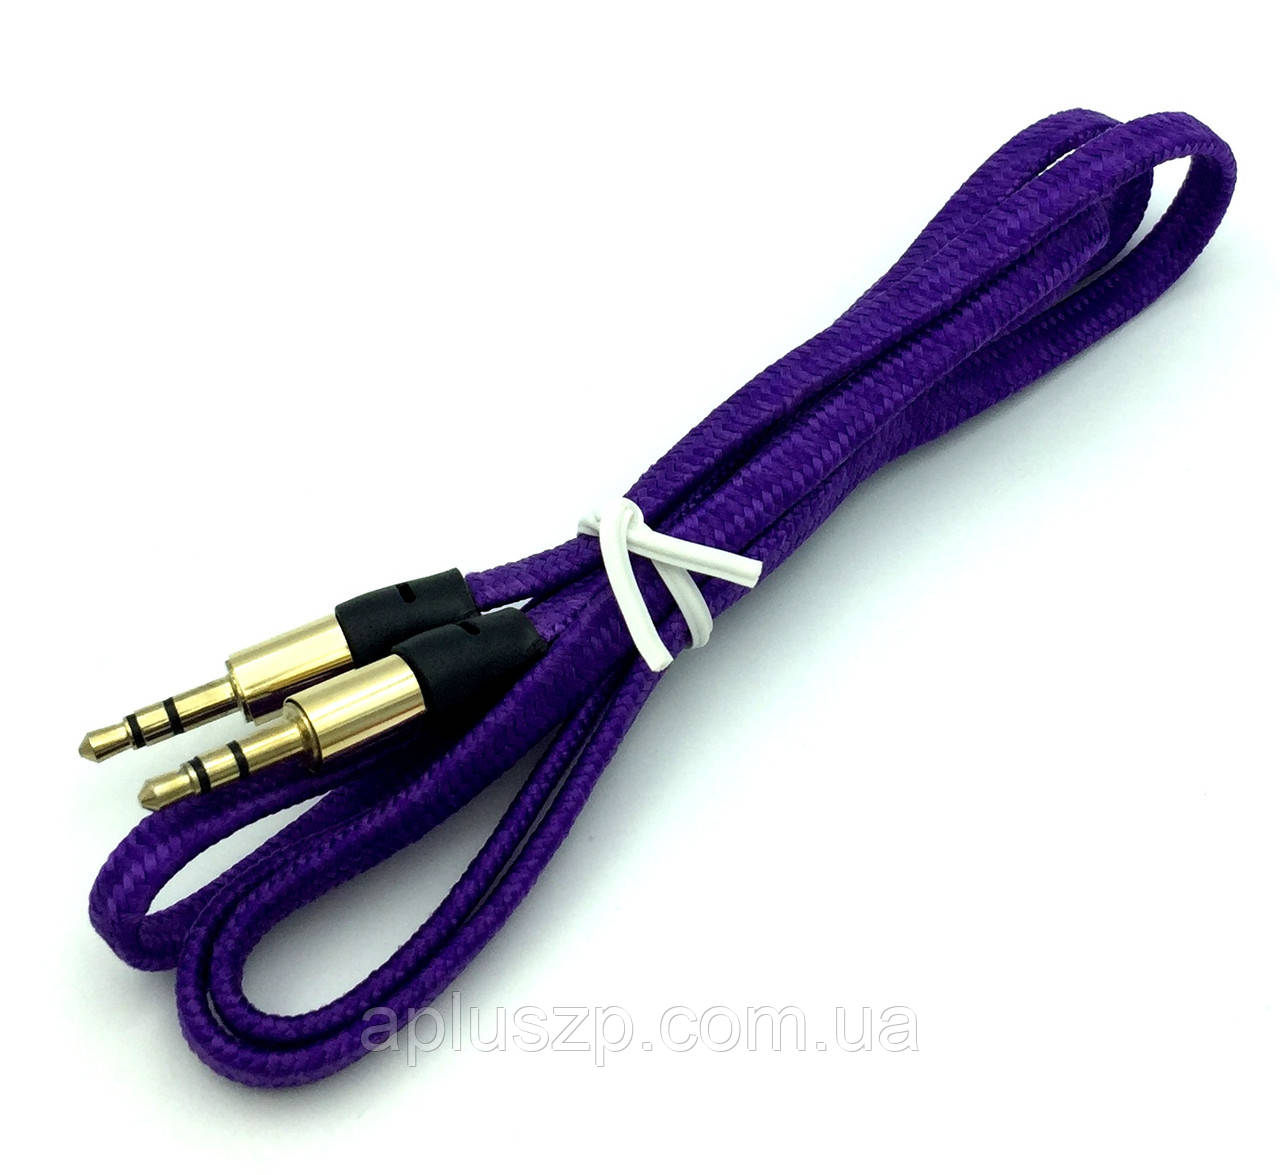 Аудіокабель для під'єднання до магнітоле/Кабель AUX плетений фіолетовий